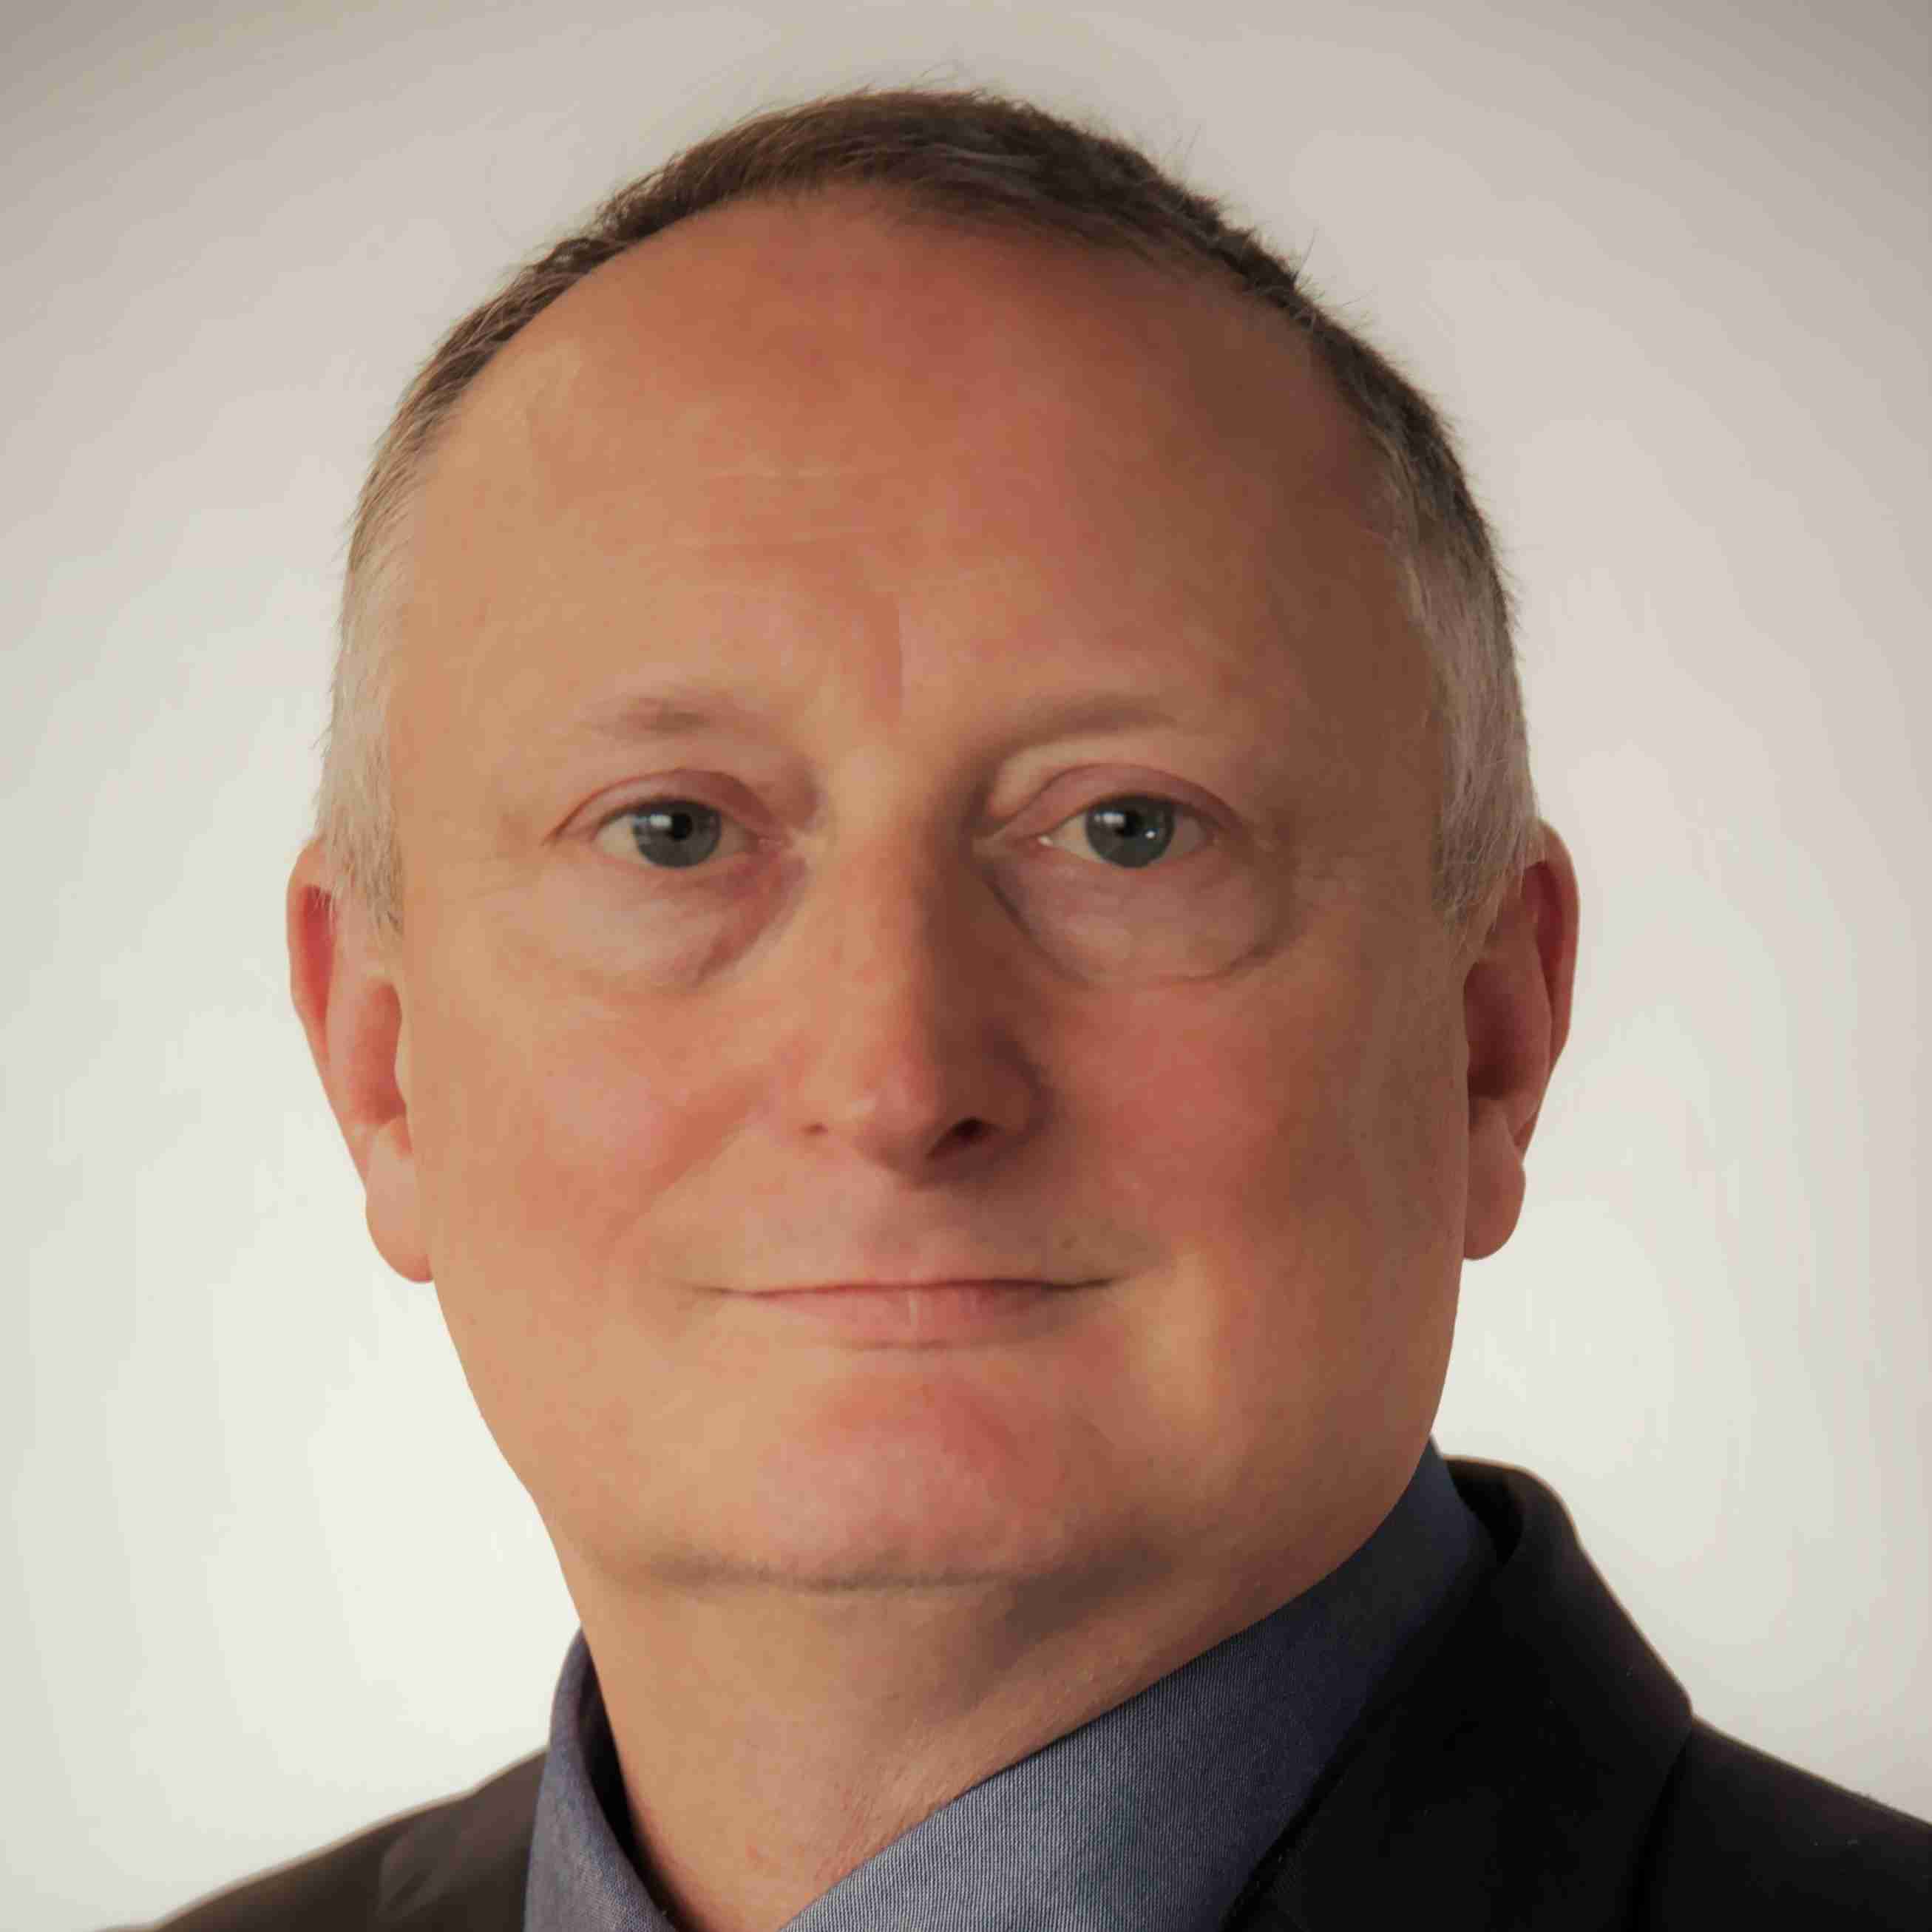 Profile image of Prof David Waddington